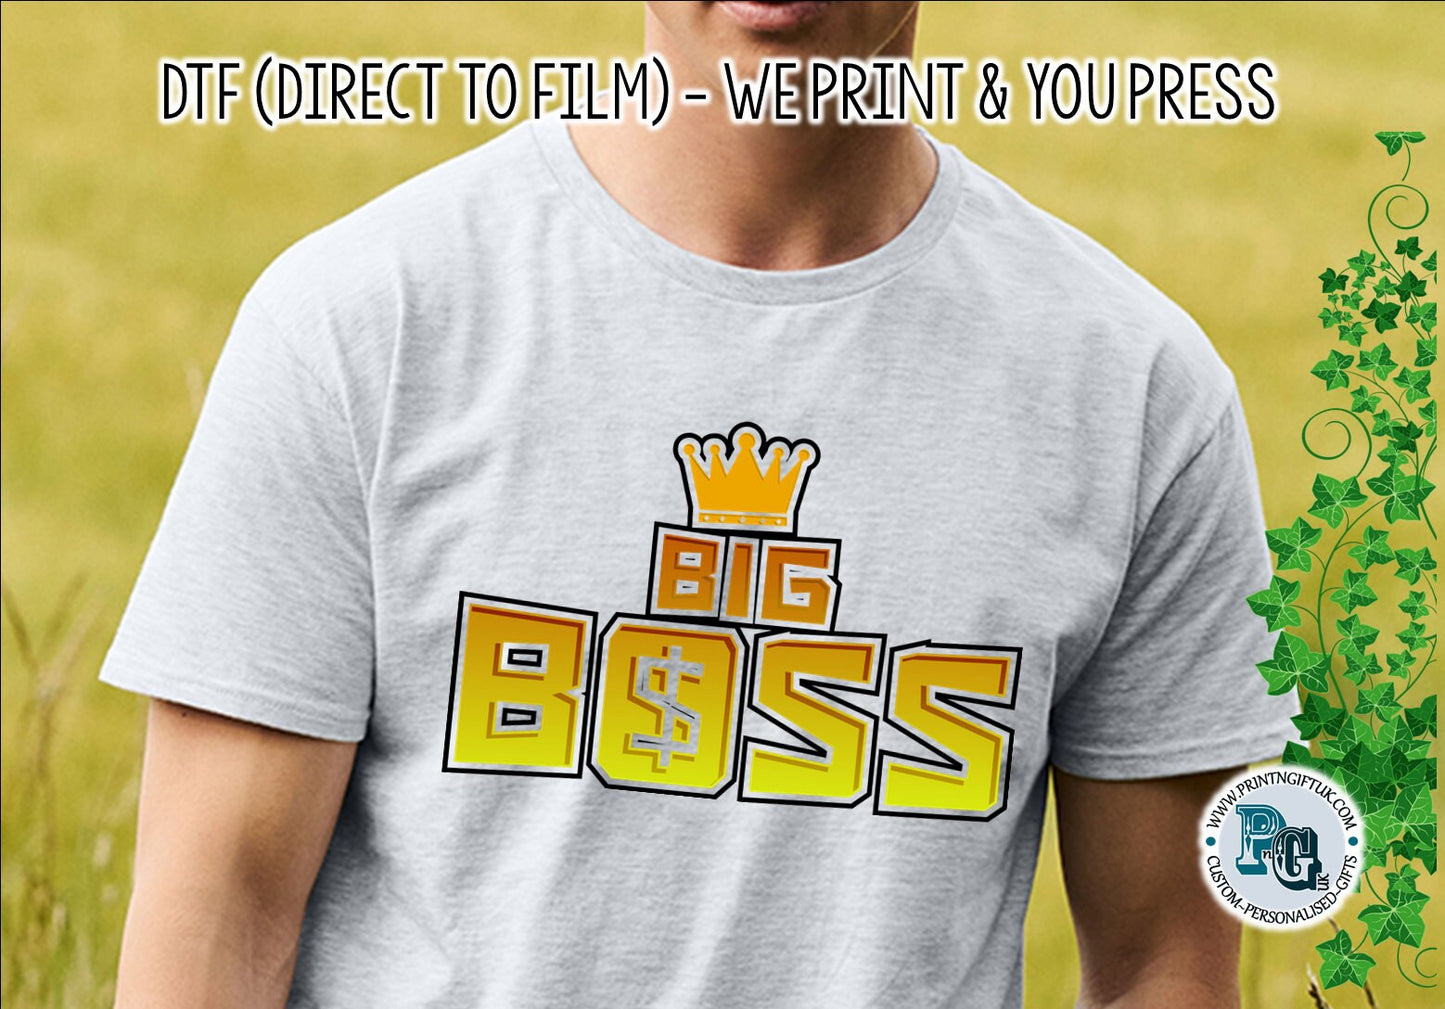 DTF Transfer: "Big Boss" Design